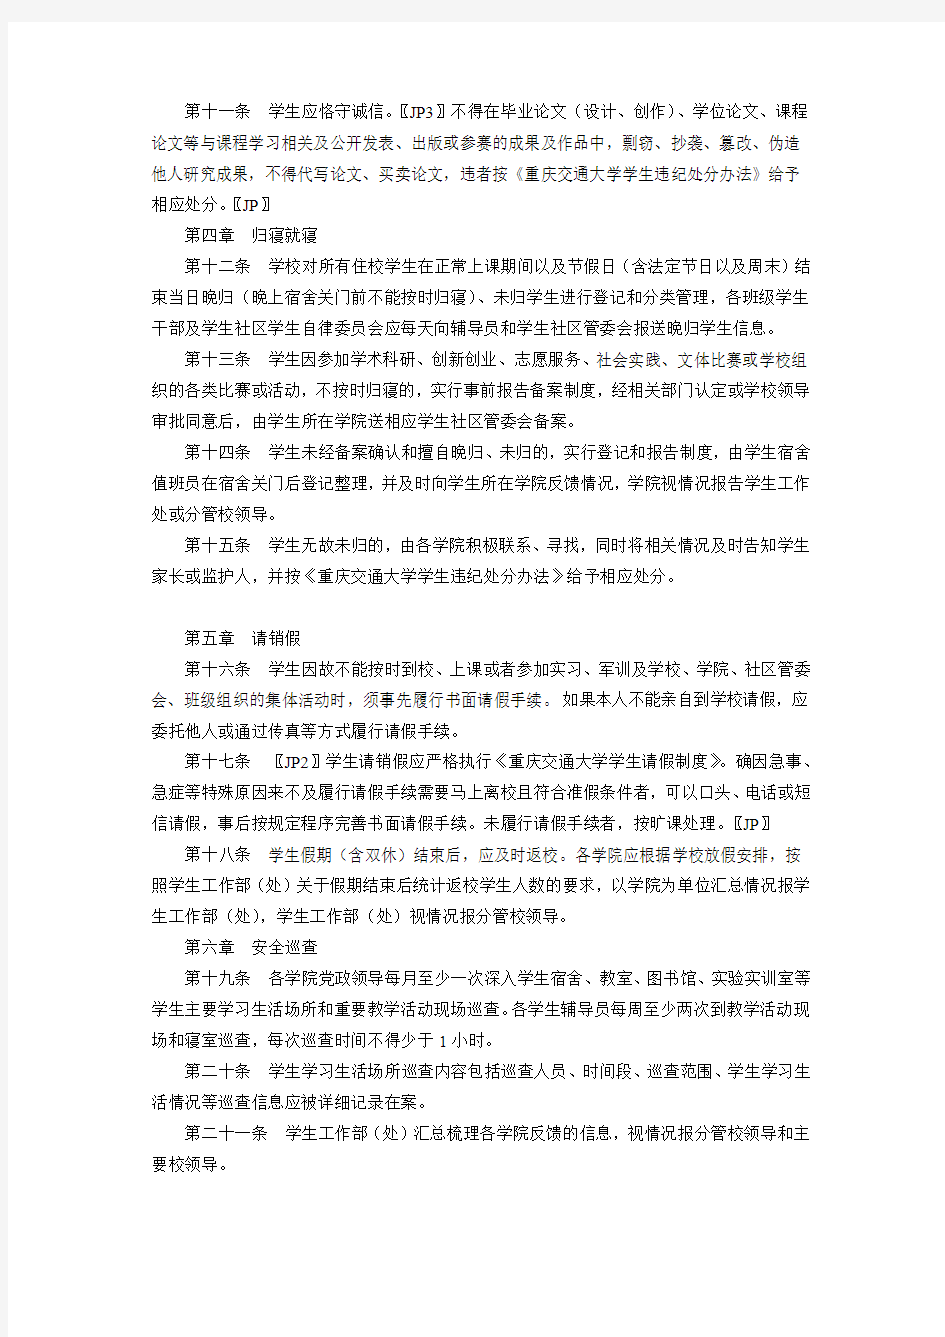 10【学生手册-日常管理】重庆交通大学学生日常行为管理规定(试行)